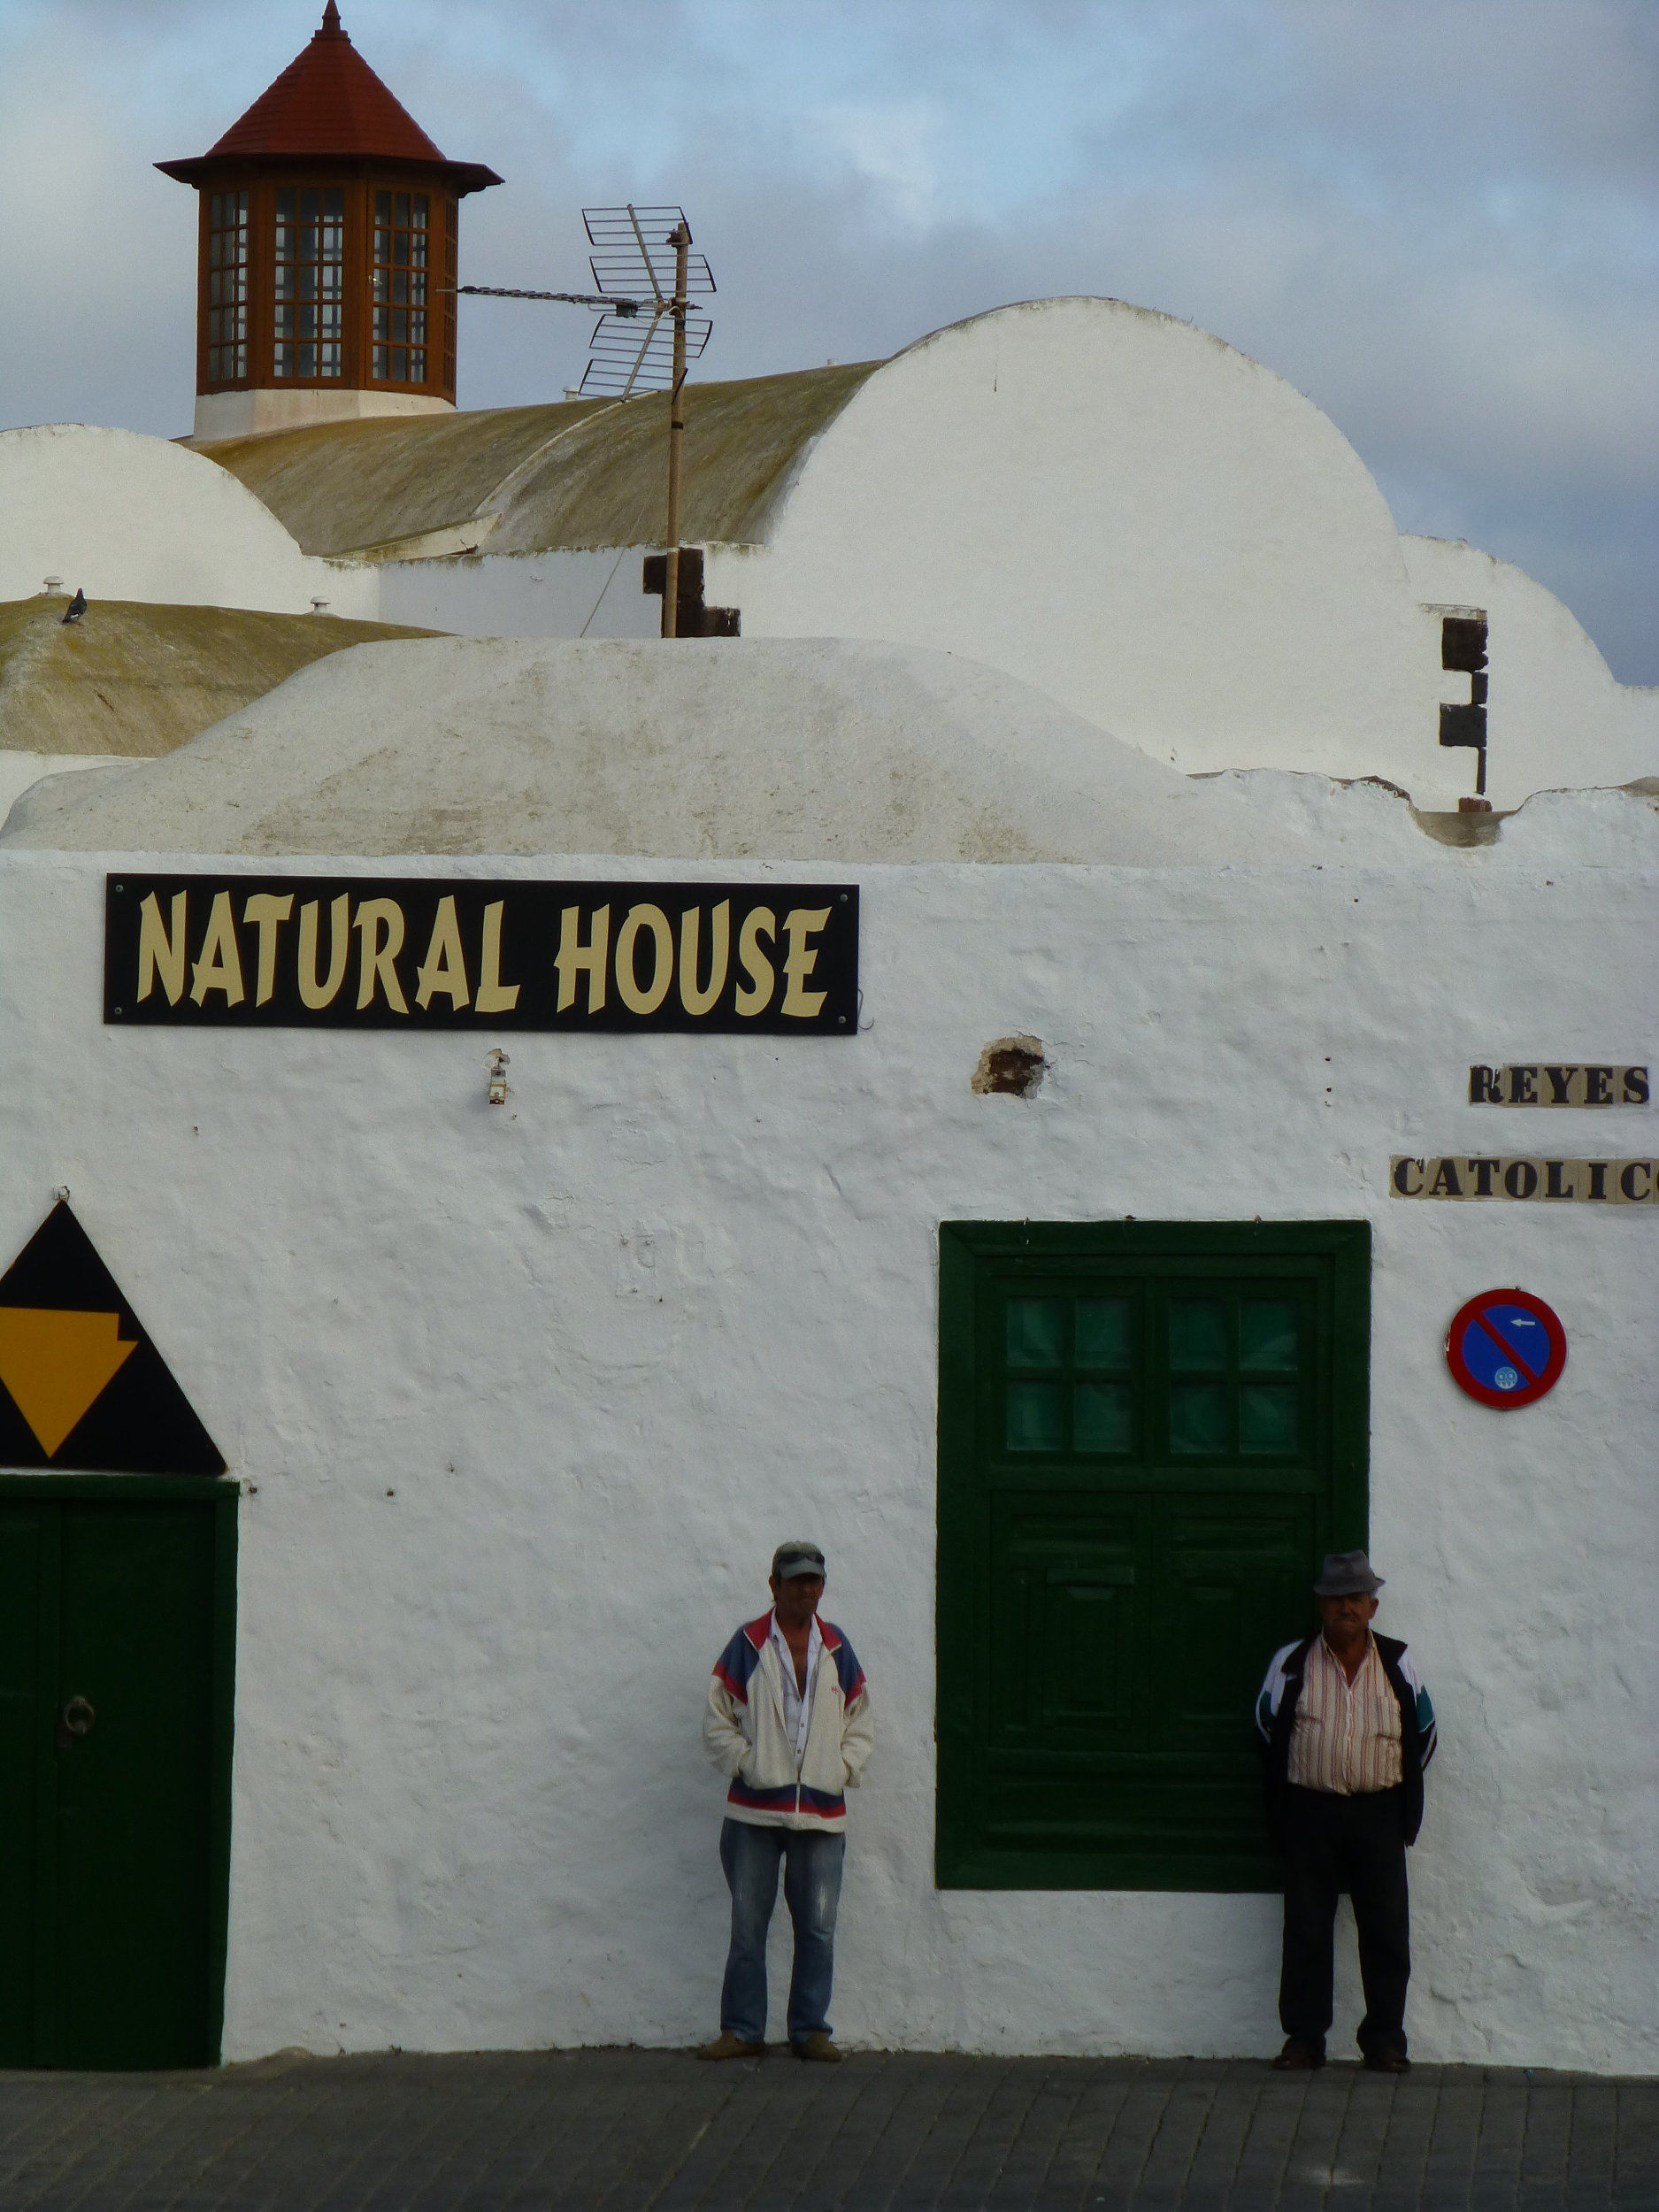 Natural house